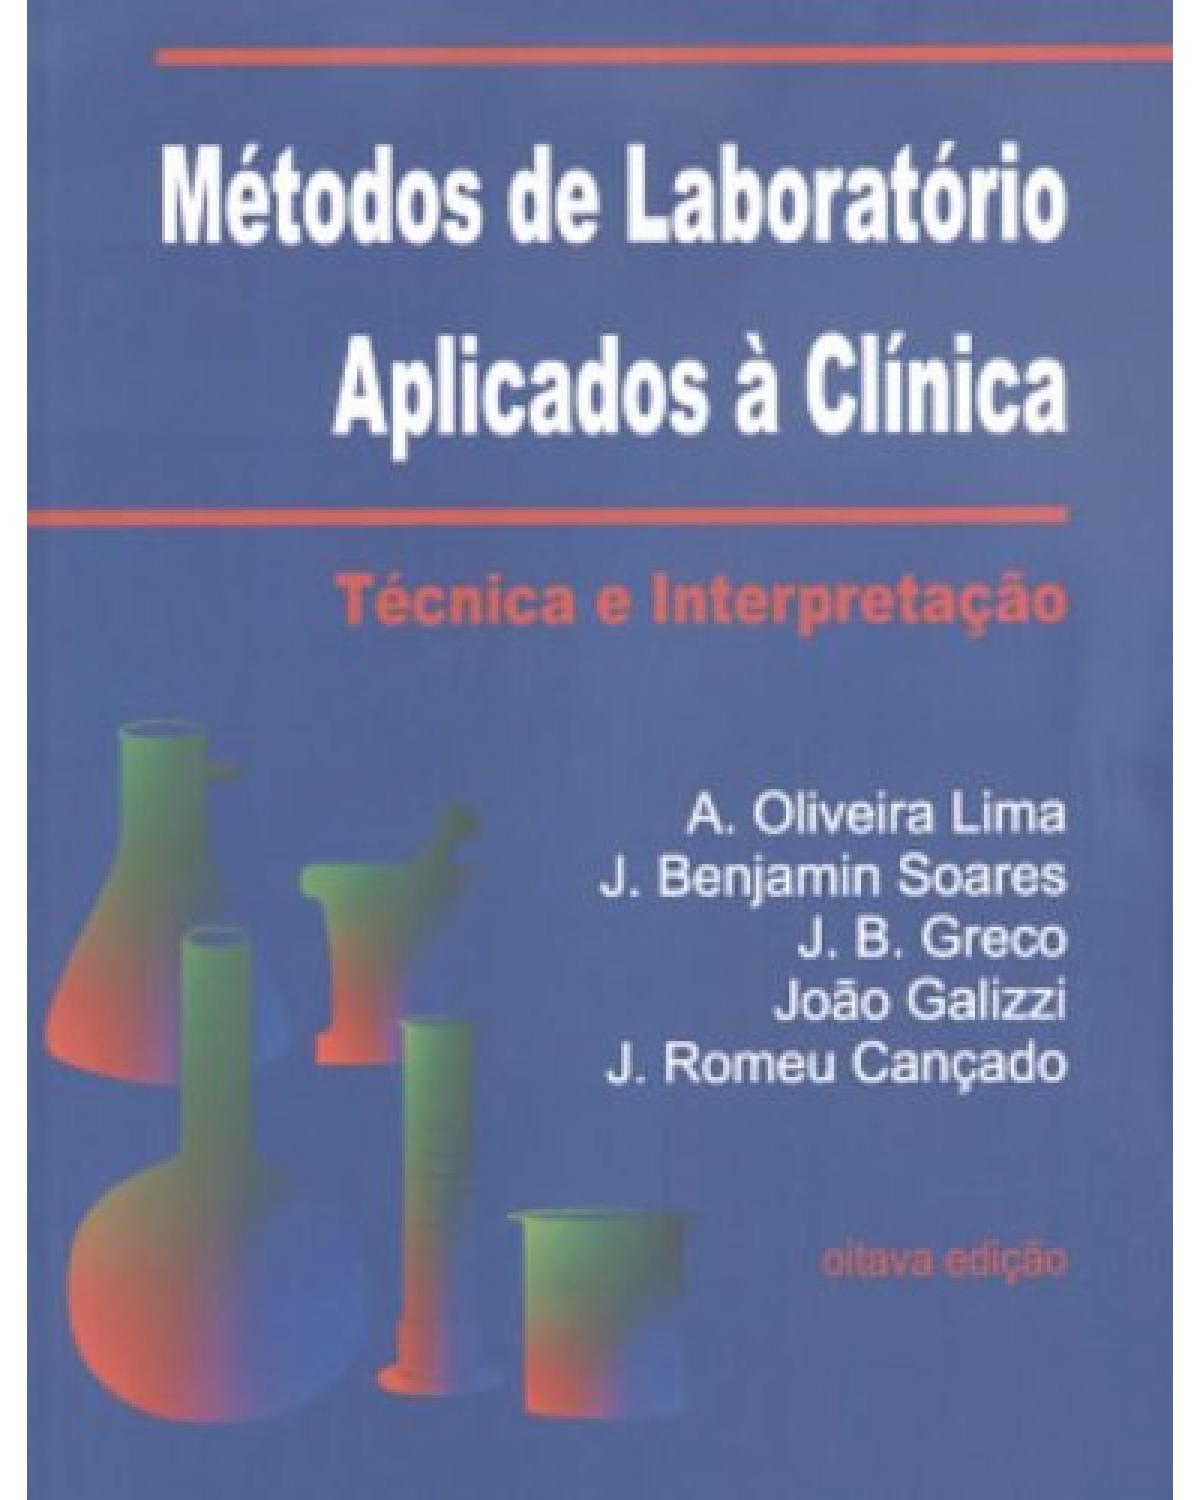 Métodos de laboratório aplicados à clínica - Técnica e interpretação - 8ª Edição | 2001